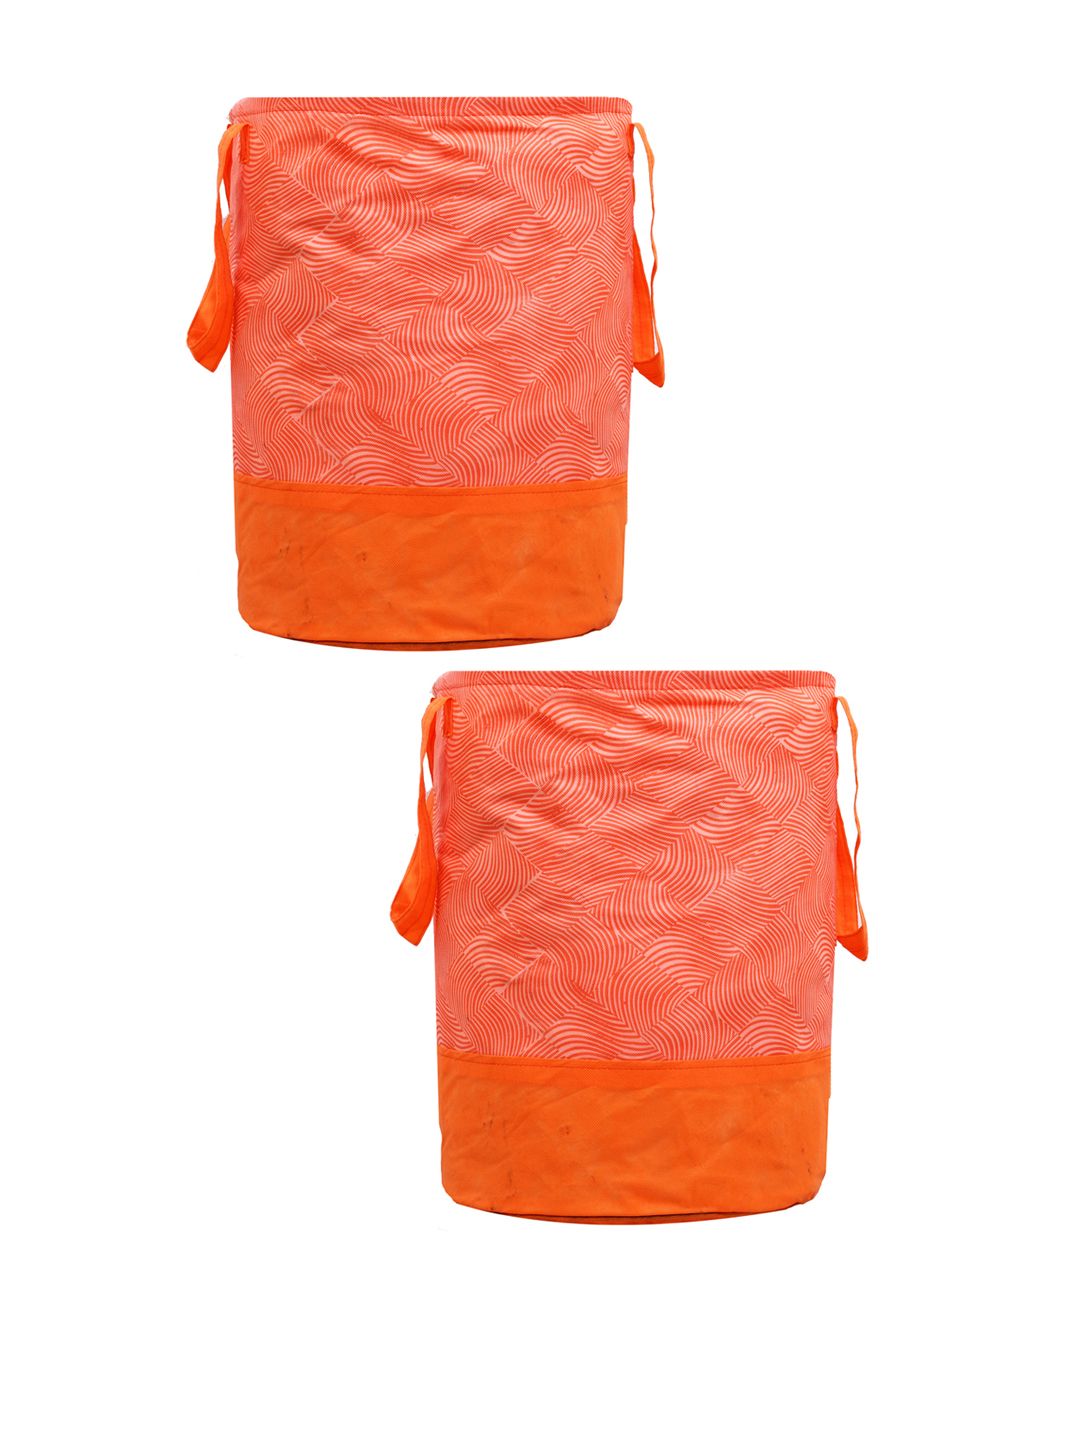 Kuber Industries Set Of 2 Orange Leheriya Printed Waterproof Canvas Laundry Bags 45 L Price in India